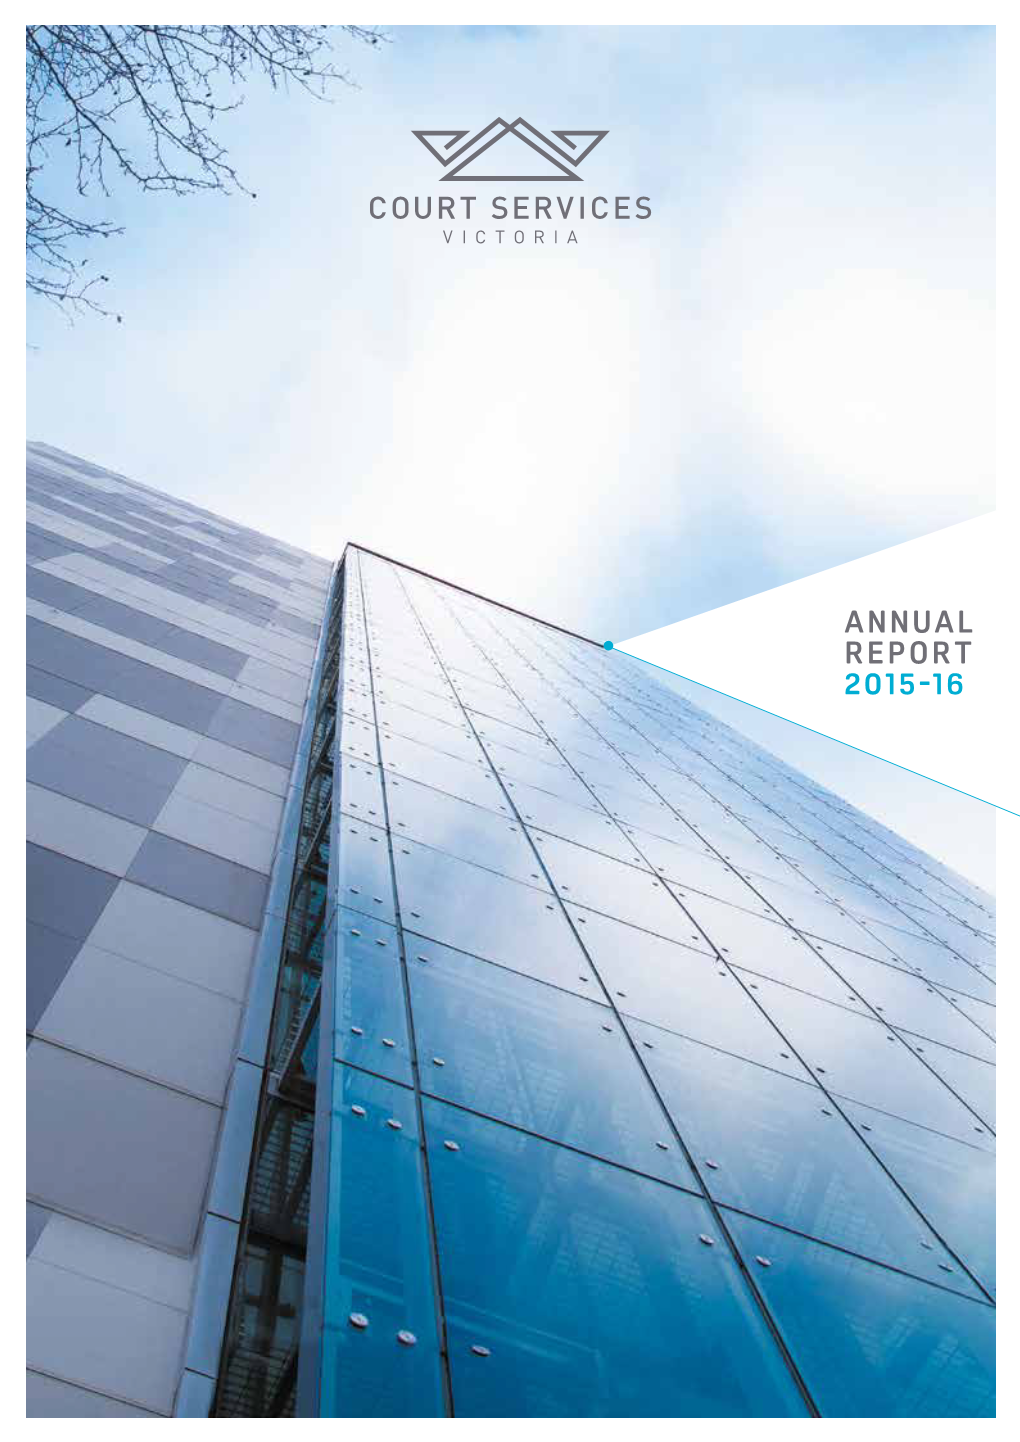 Court Services Victoria Annual Report 2015-16